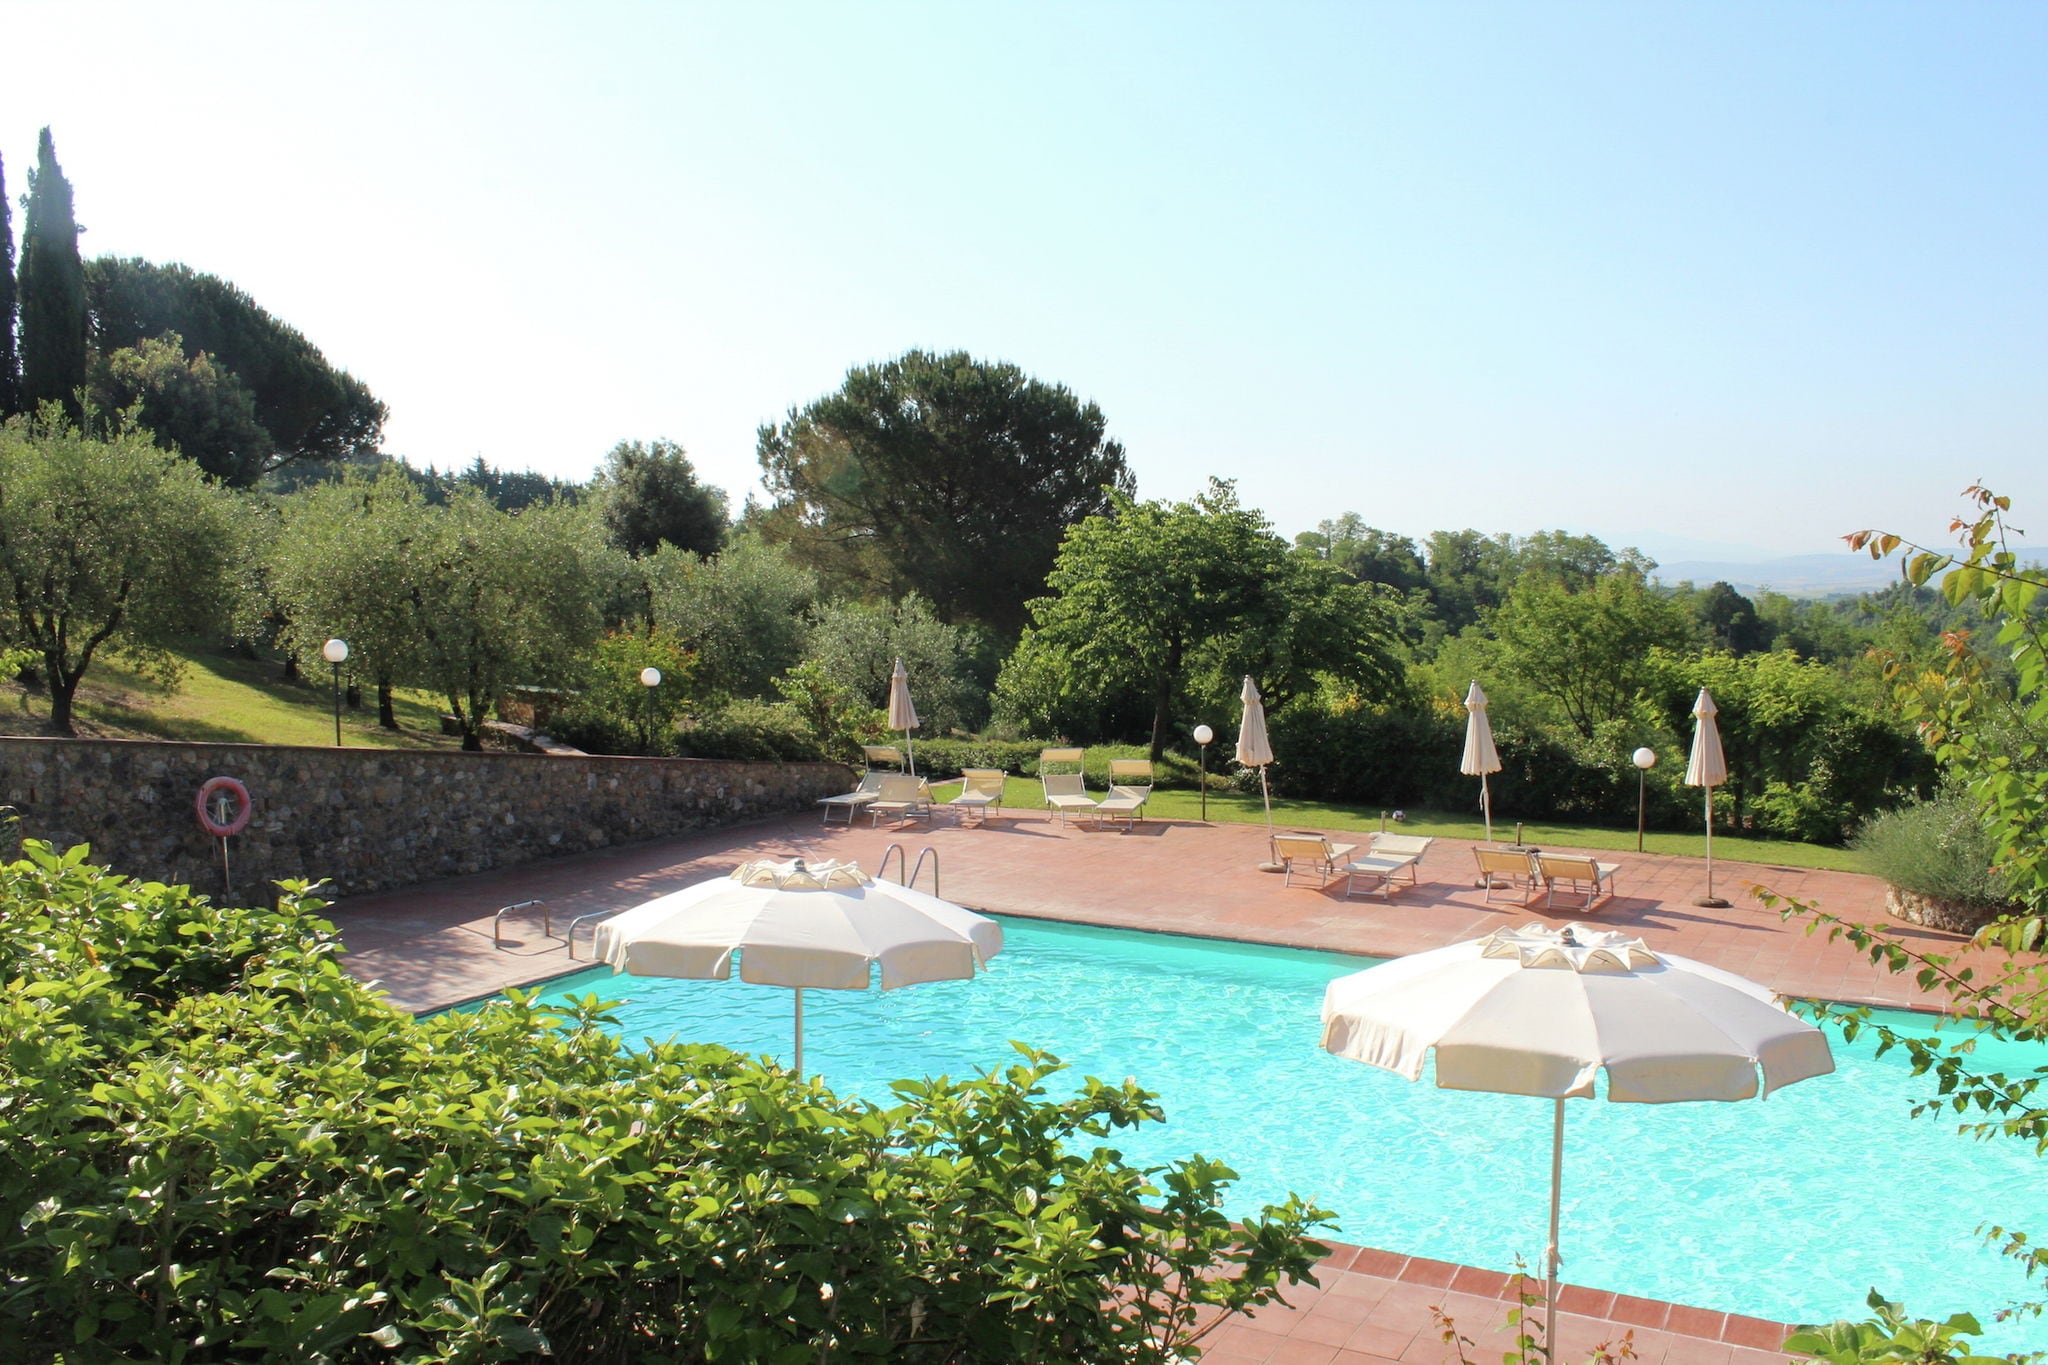 Maison de vacances confortable avec piscine à Sienne, Italie